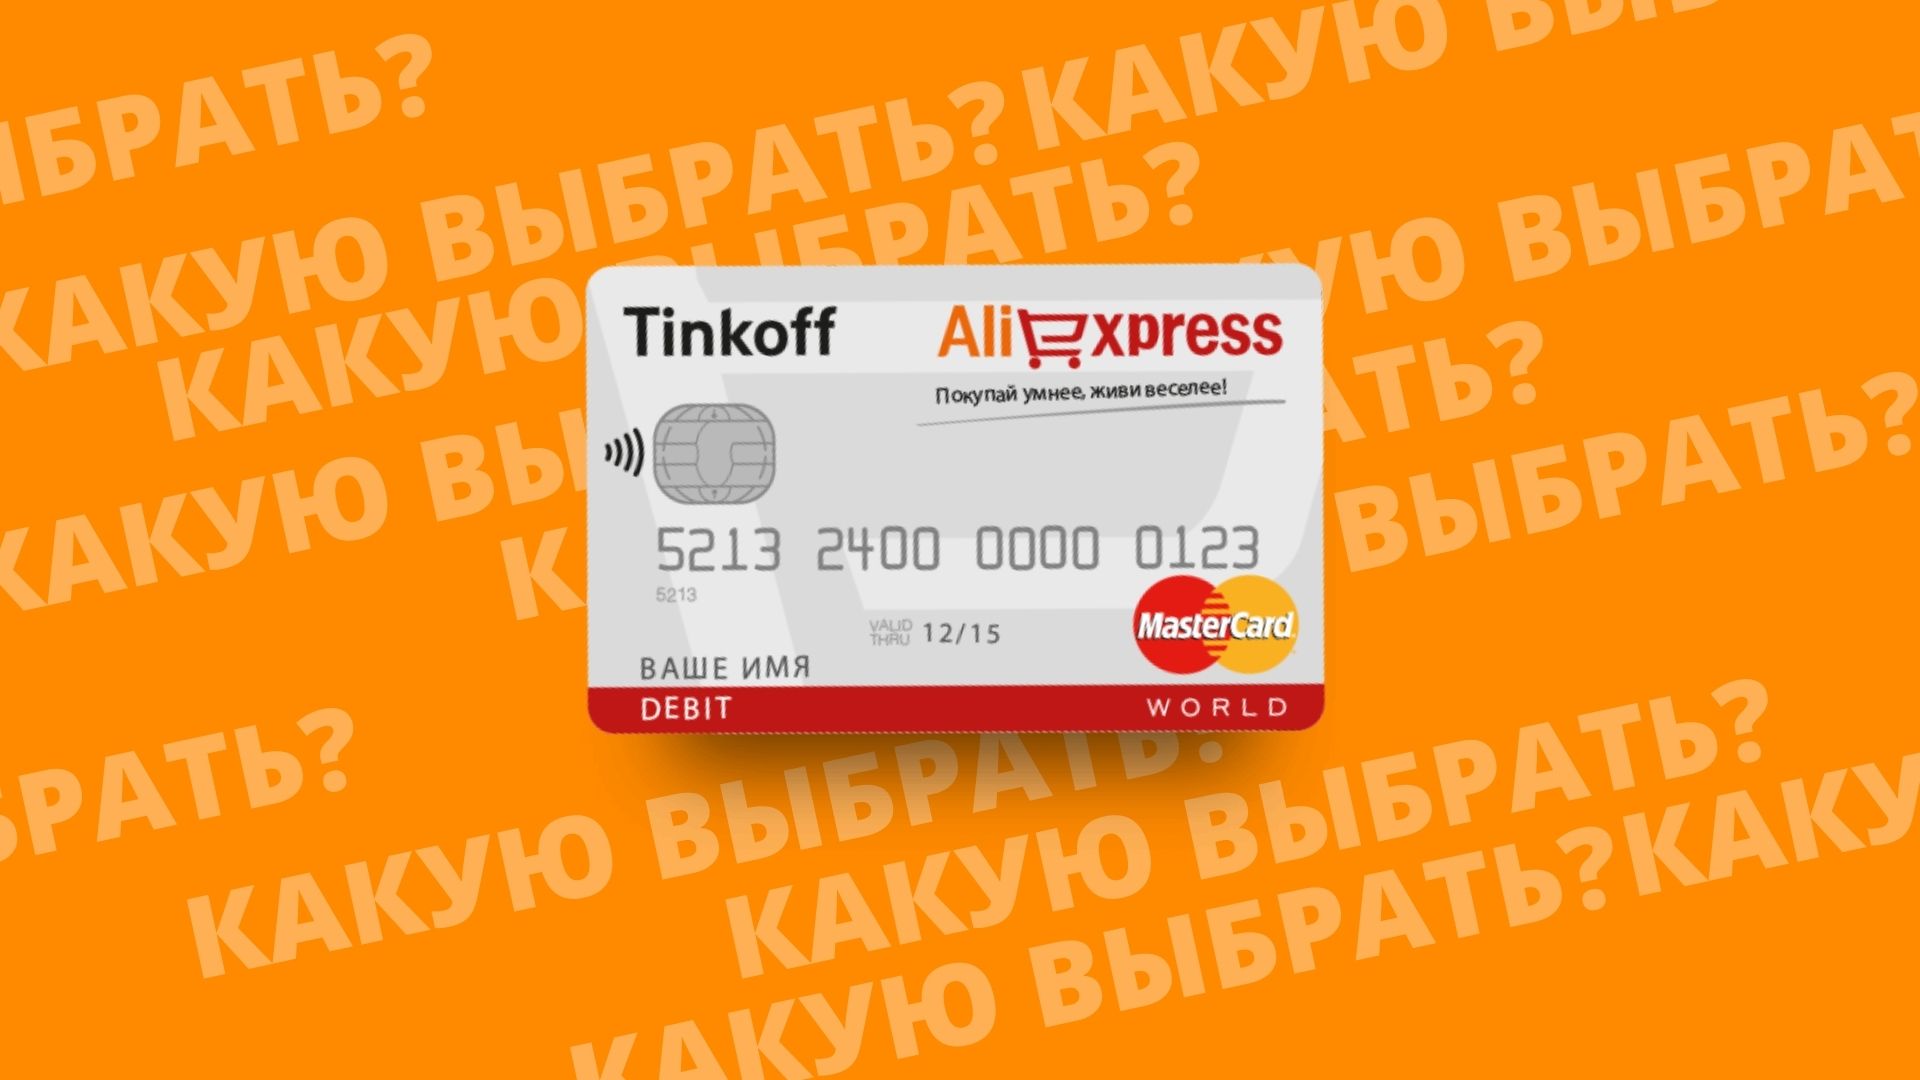 ALI EXPRESS кэшбэк дебетовая карта банка Тинькофф. Почему стоит выбрать